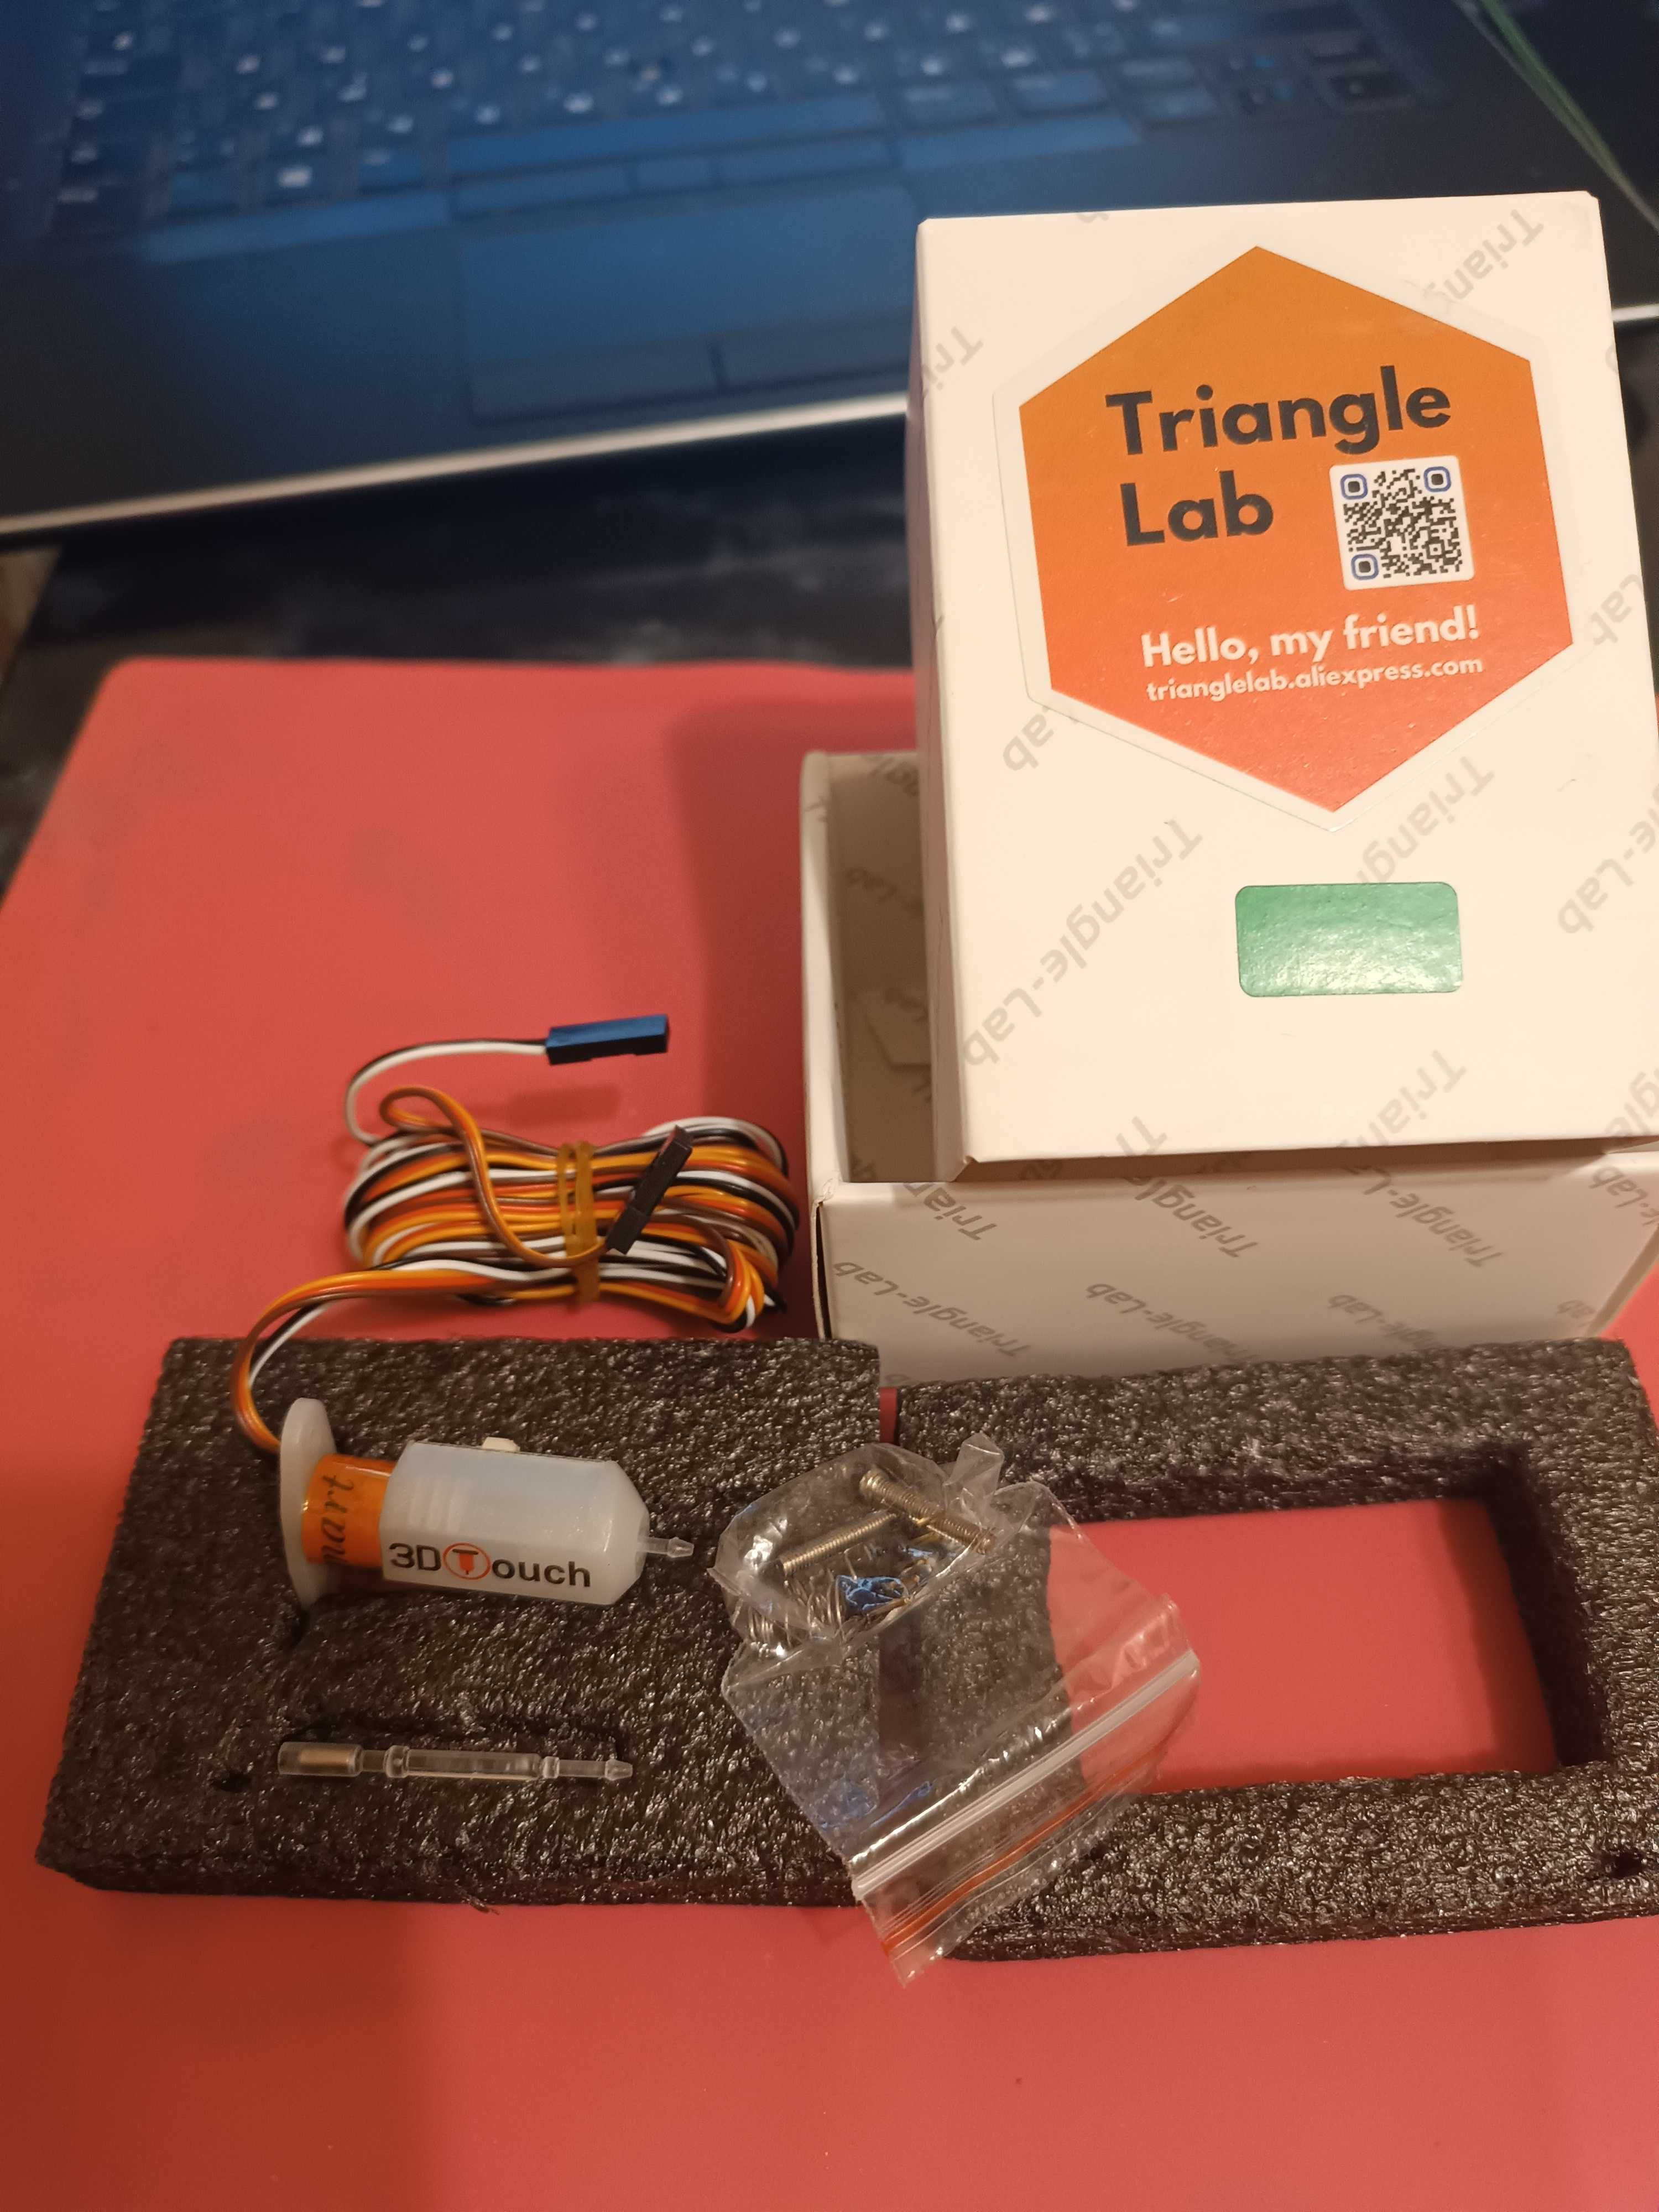 Оригінальний Triangle Lab 3D Touch, датчик вирівнювання стола